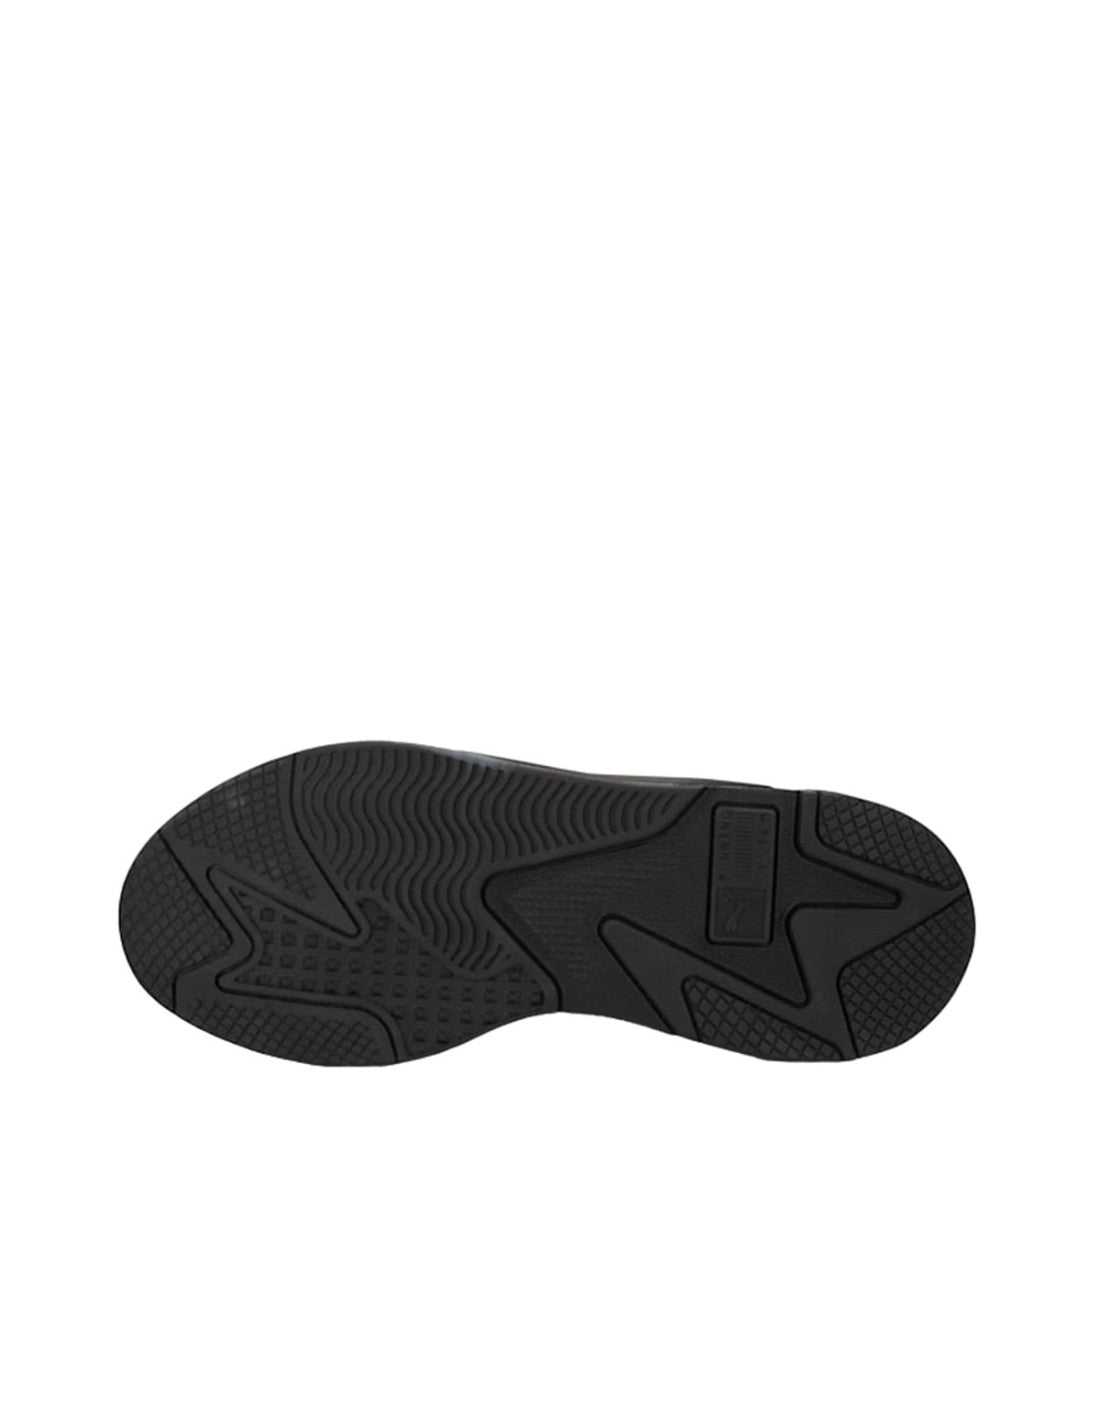 Zapatillas PUMA RS-X 3D